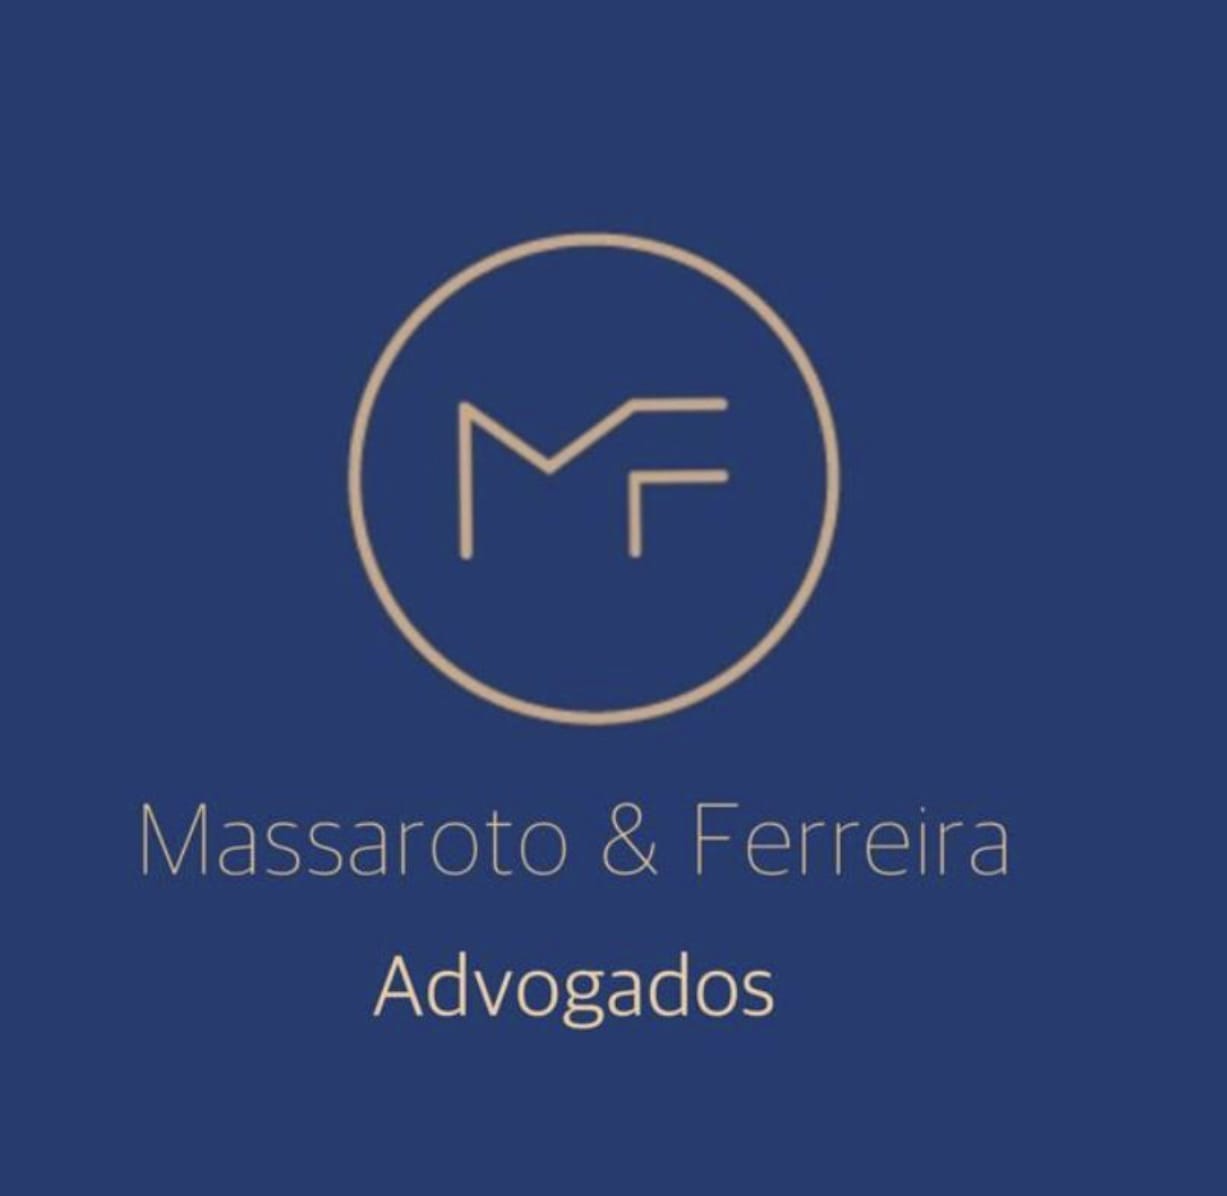 Massaroto & Ferreira Advogados